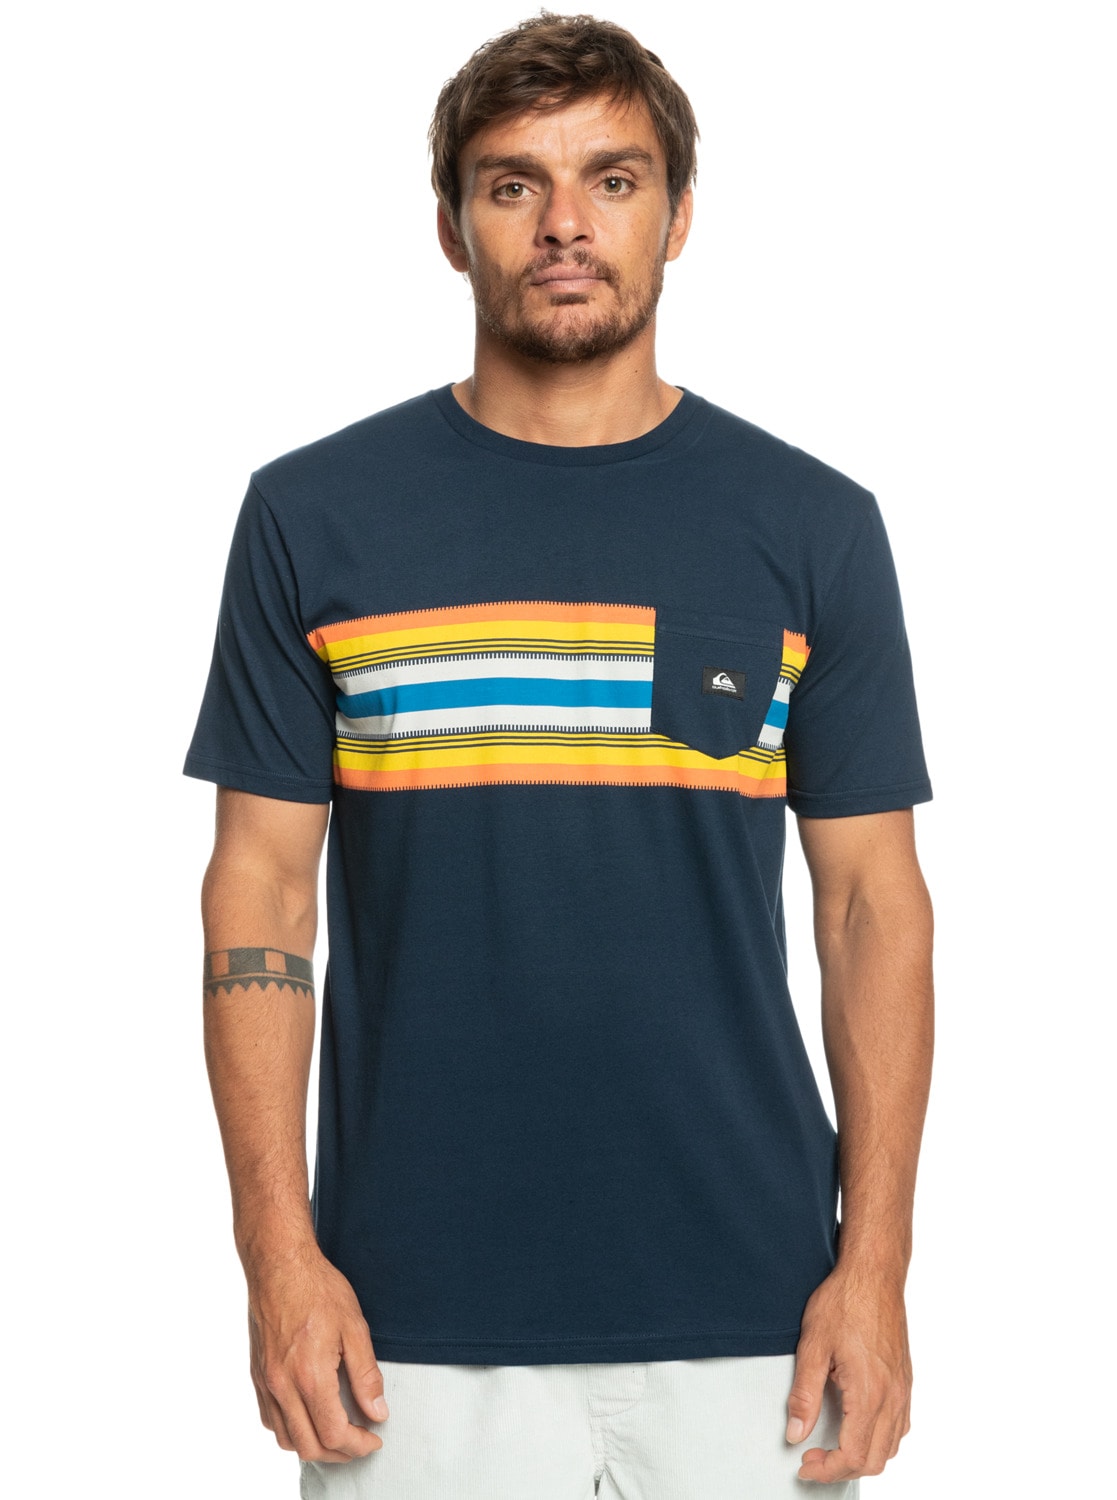 Quiksilver T-Shirt »Surfadelica Stripe« von Quiksilver